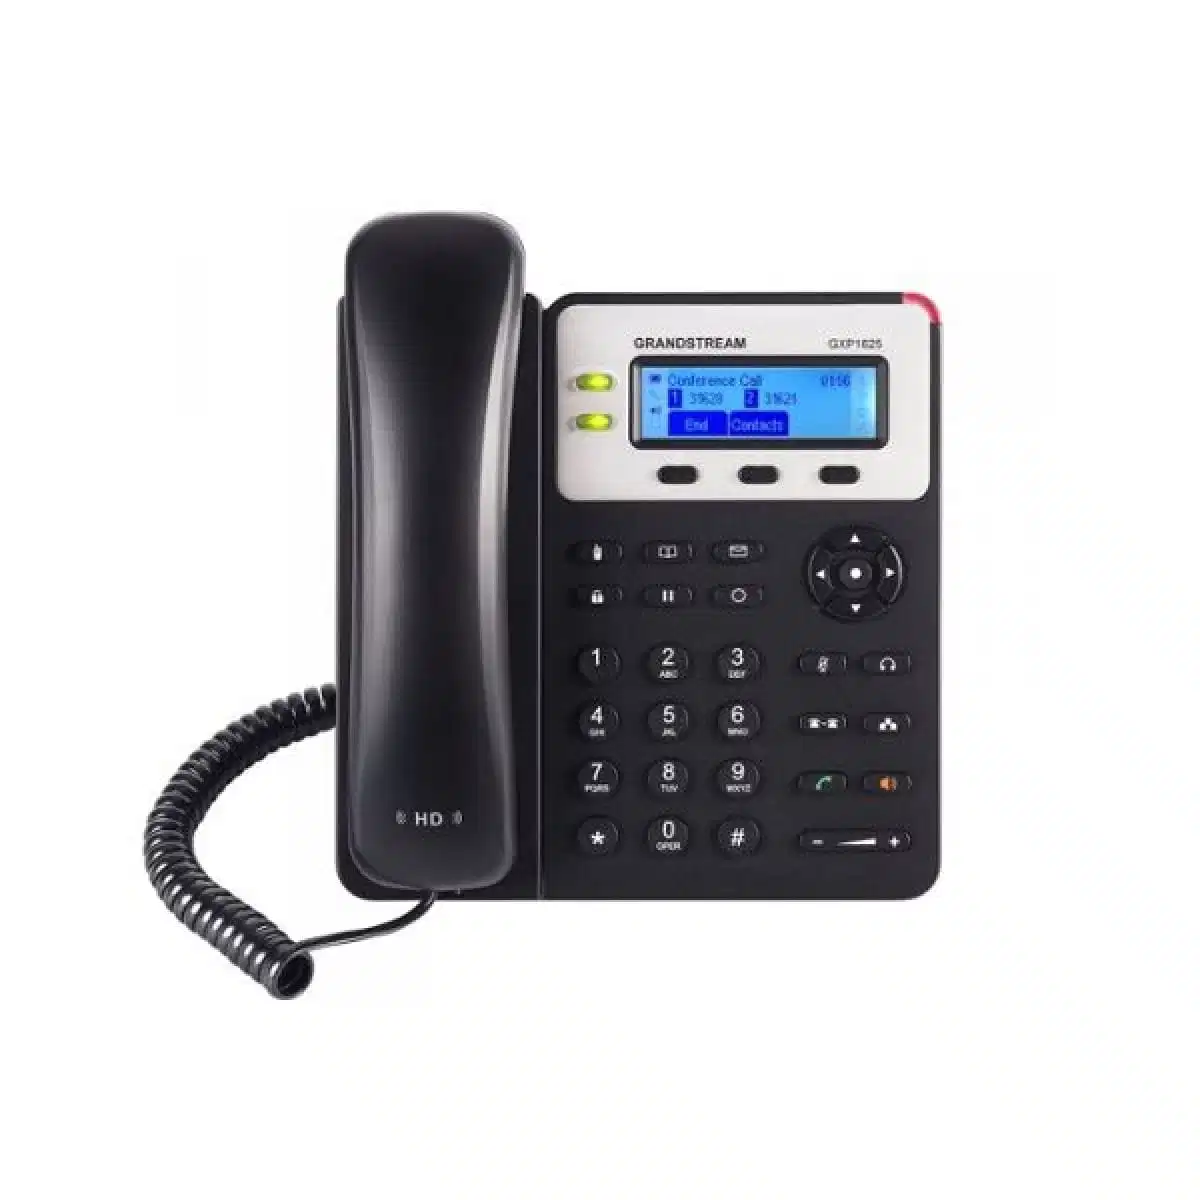 Un simple y fiable el GXP1625 teléfono IP teléfono IP fiable para pequeñas empresas GXP1625 teléfono IP de los usuarios